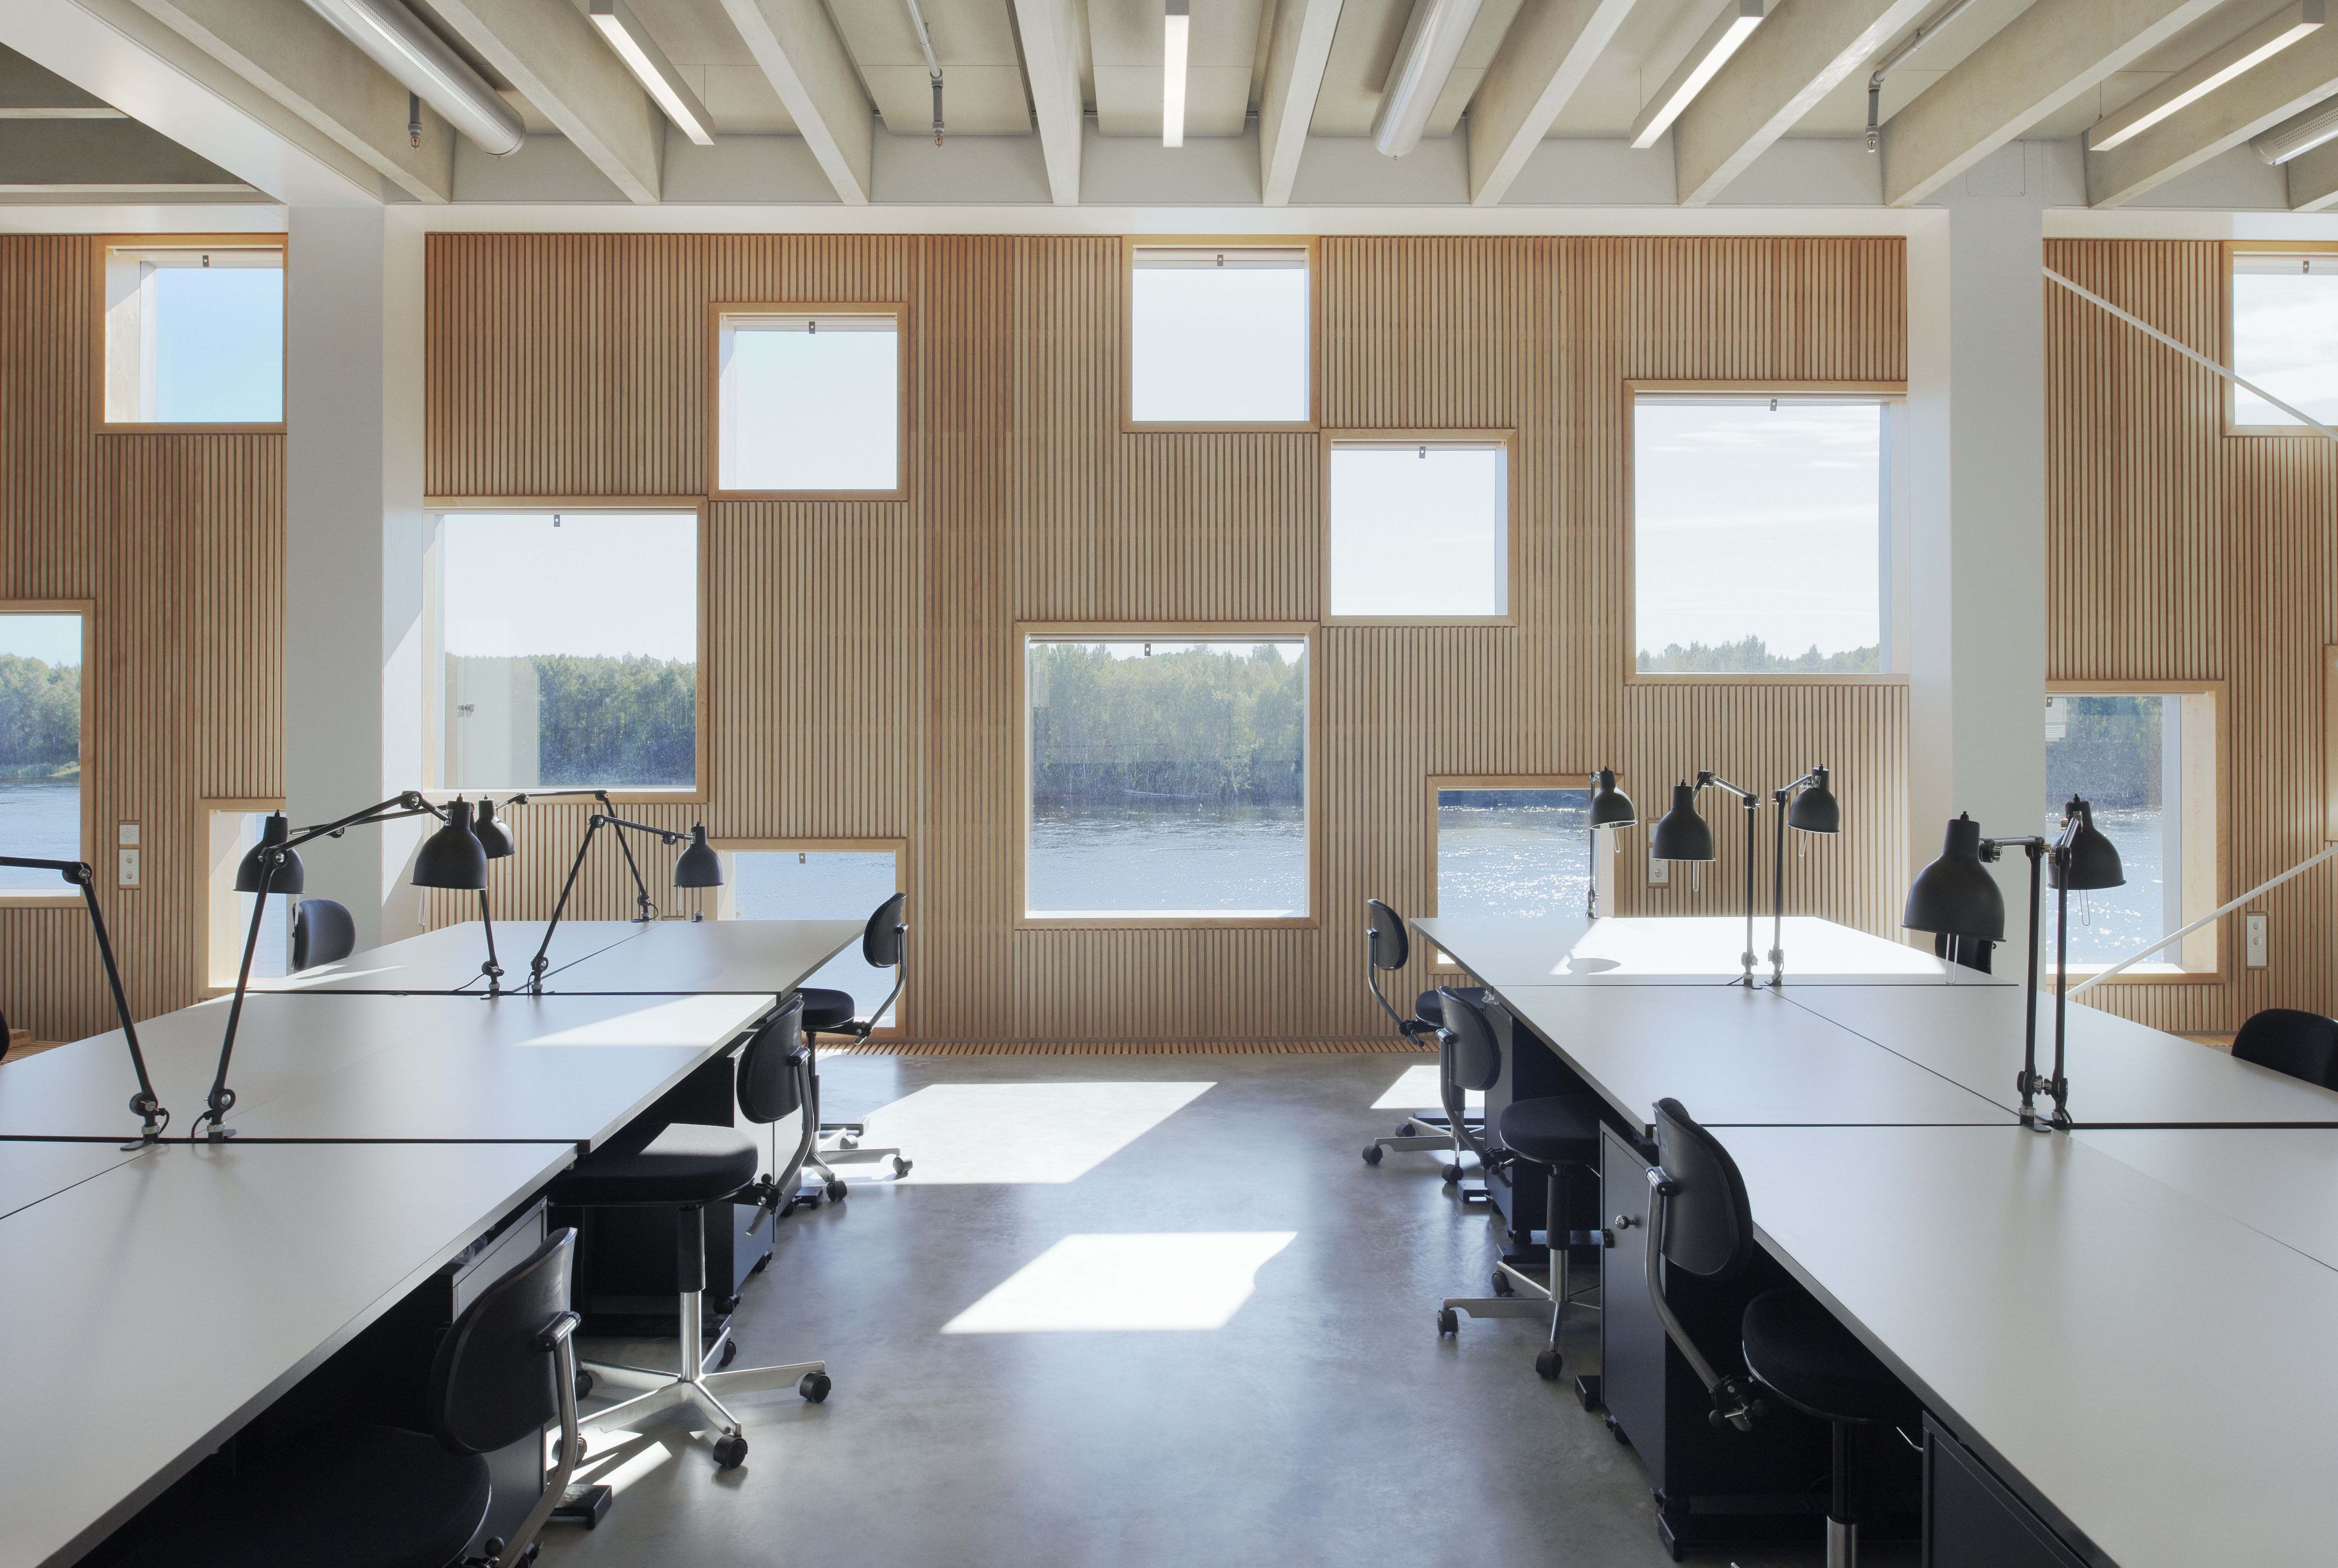 Учебные помещения в школе. Архитектурный колледж Umea в Швеции Henning Larsen Architects. Интерьер класса. Интерьер аудитории для архитекторов. Интерьер учебной аудитории.